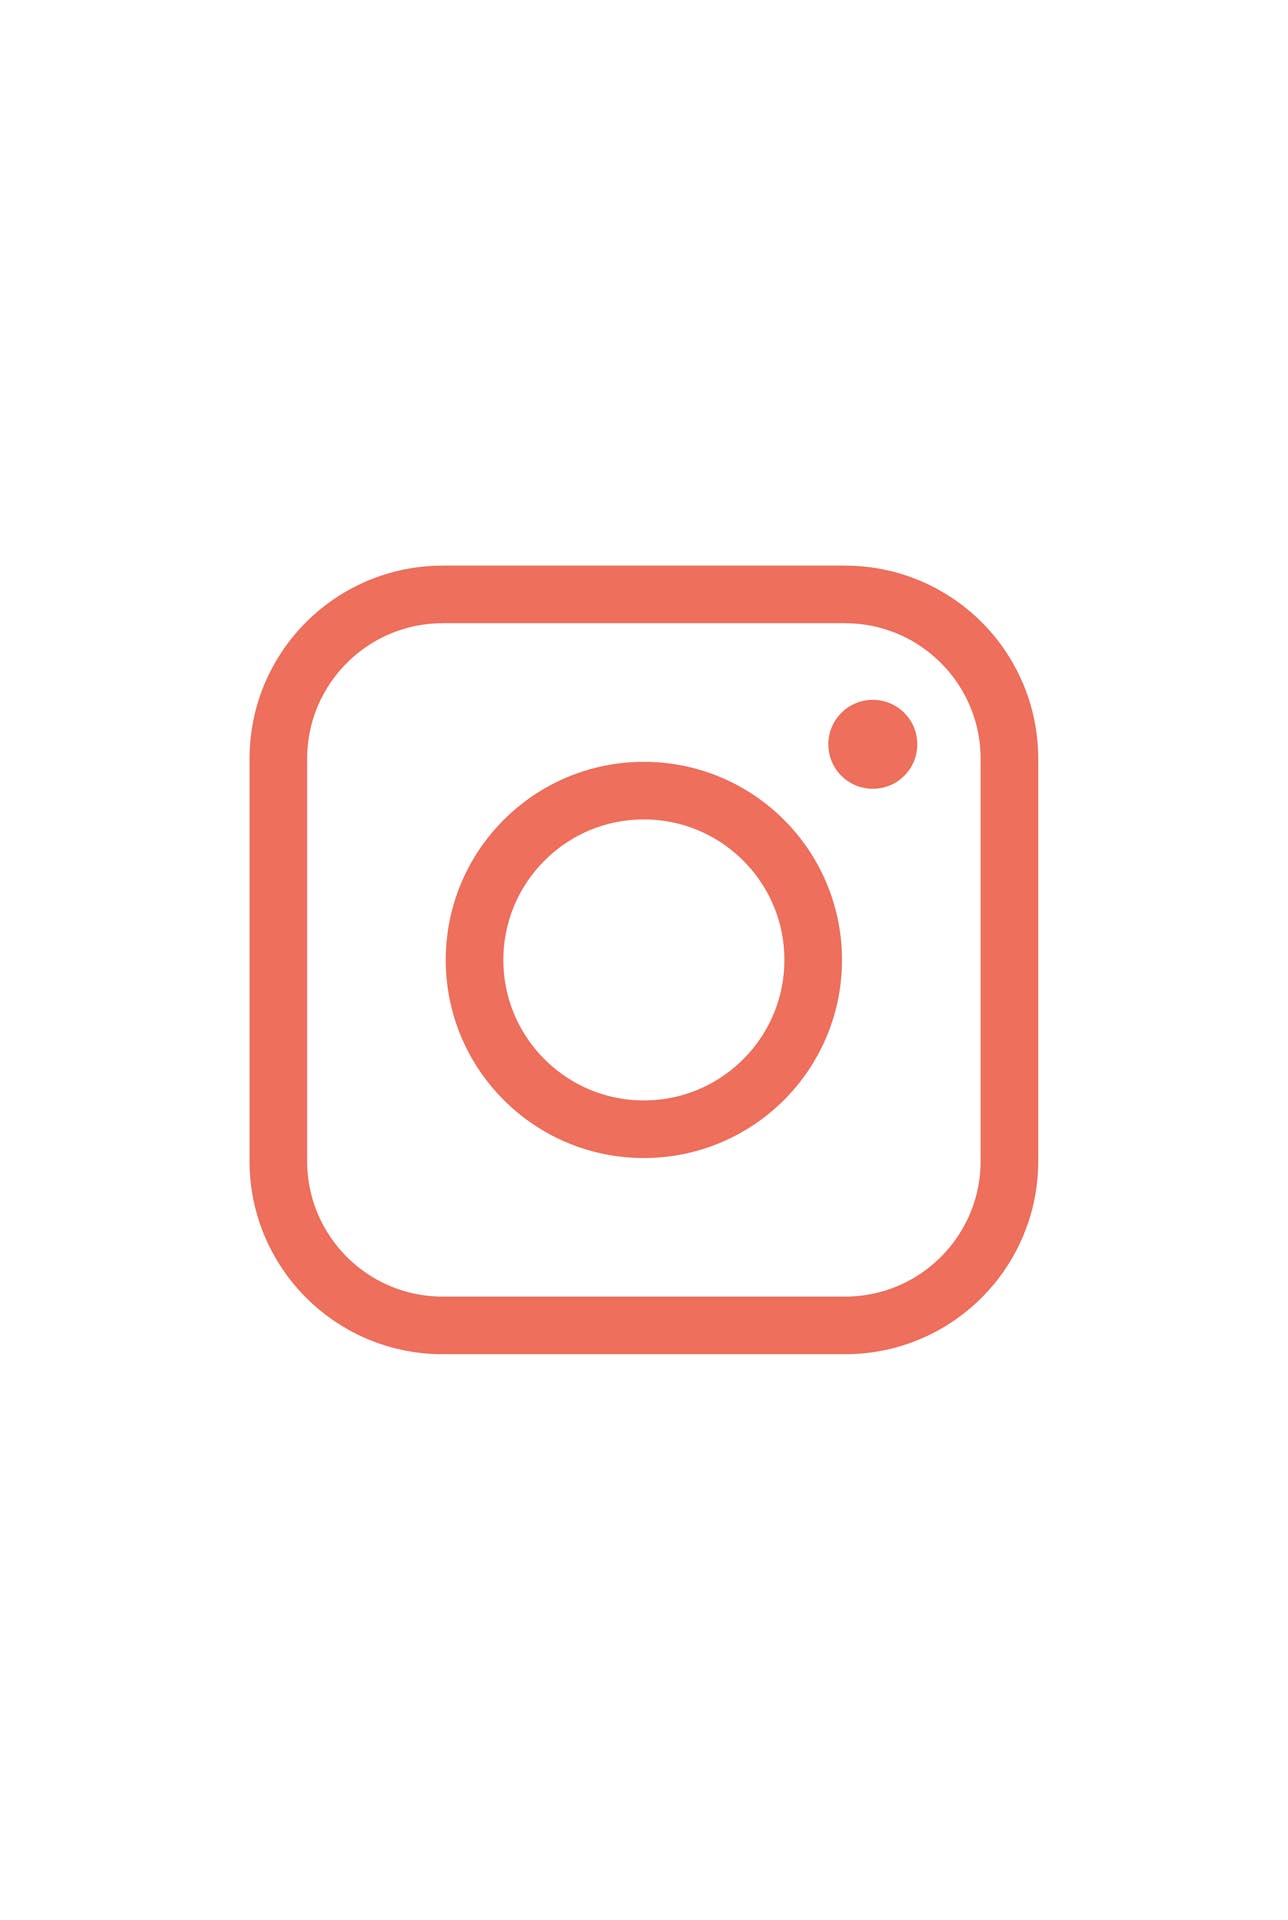 Crowdfunding : créer un compte Instagram